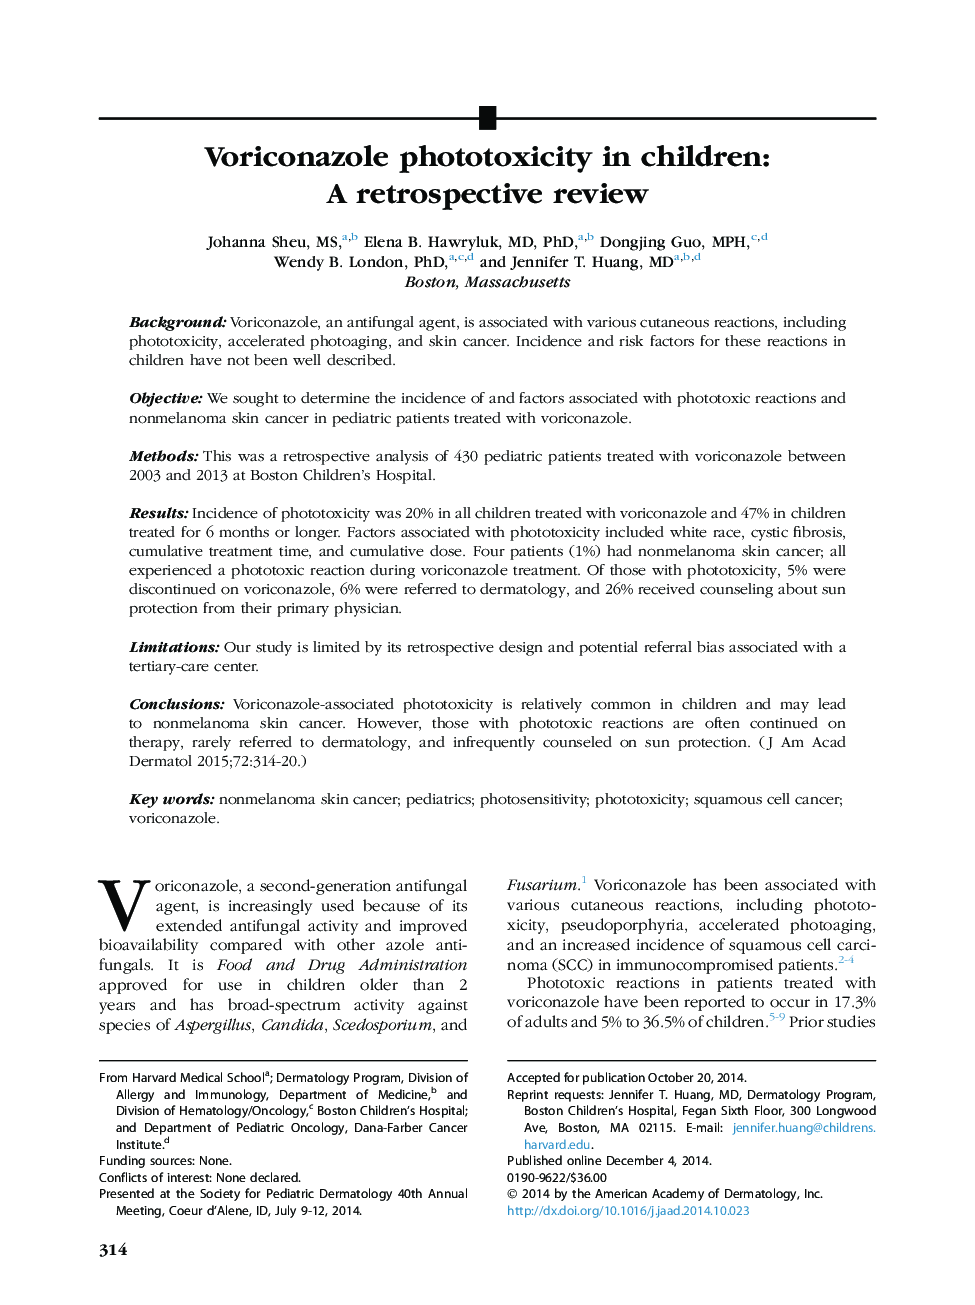 Voriconazole phototoxicity in children: A retrospective review 